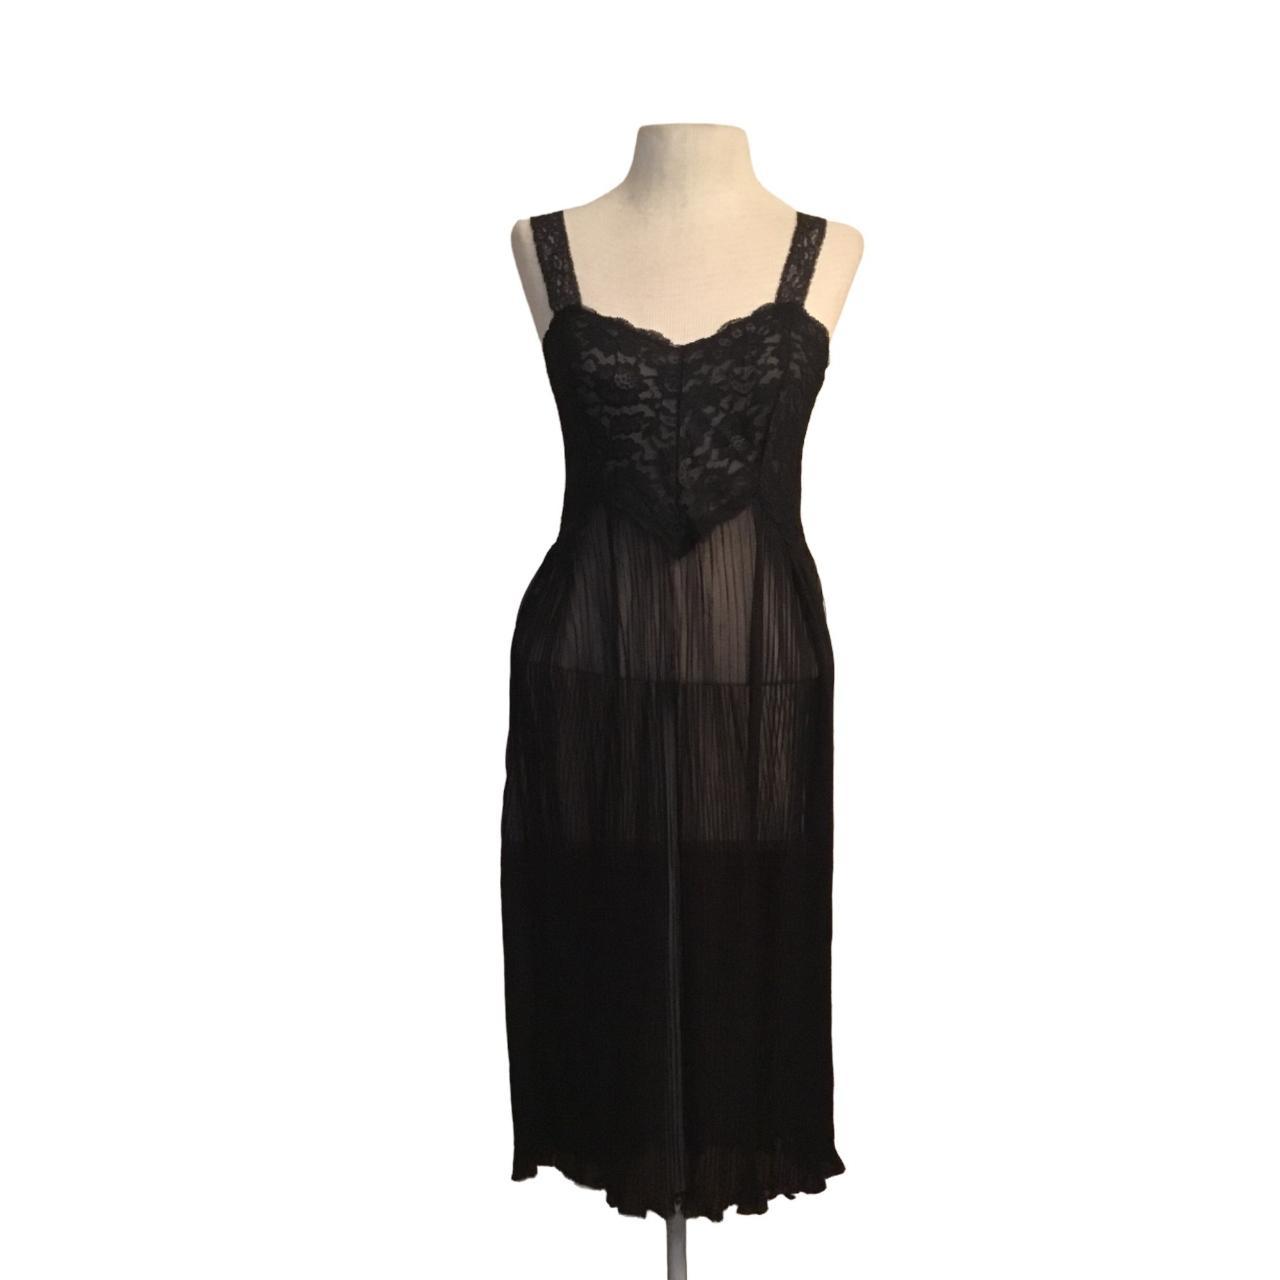 Vintage Michelene Nylon Gown Size 32 Black Sheer... - Depop